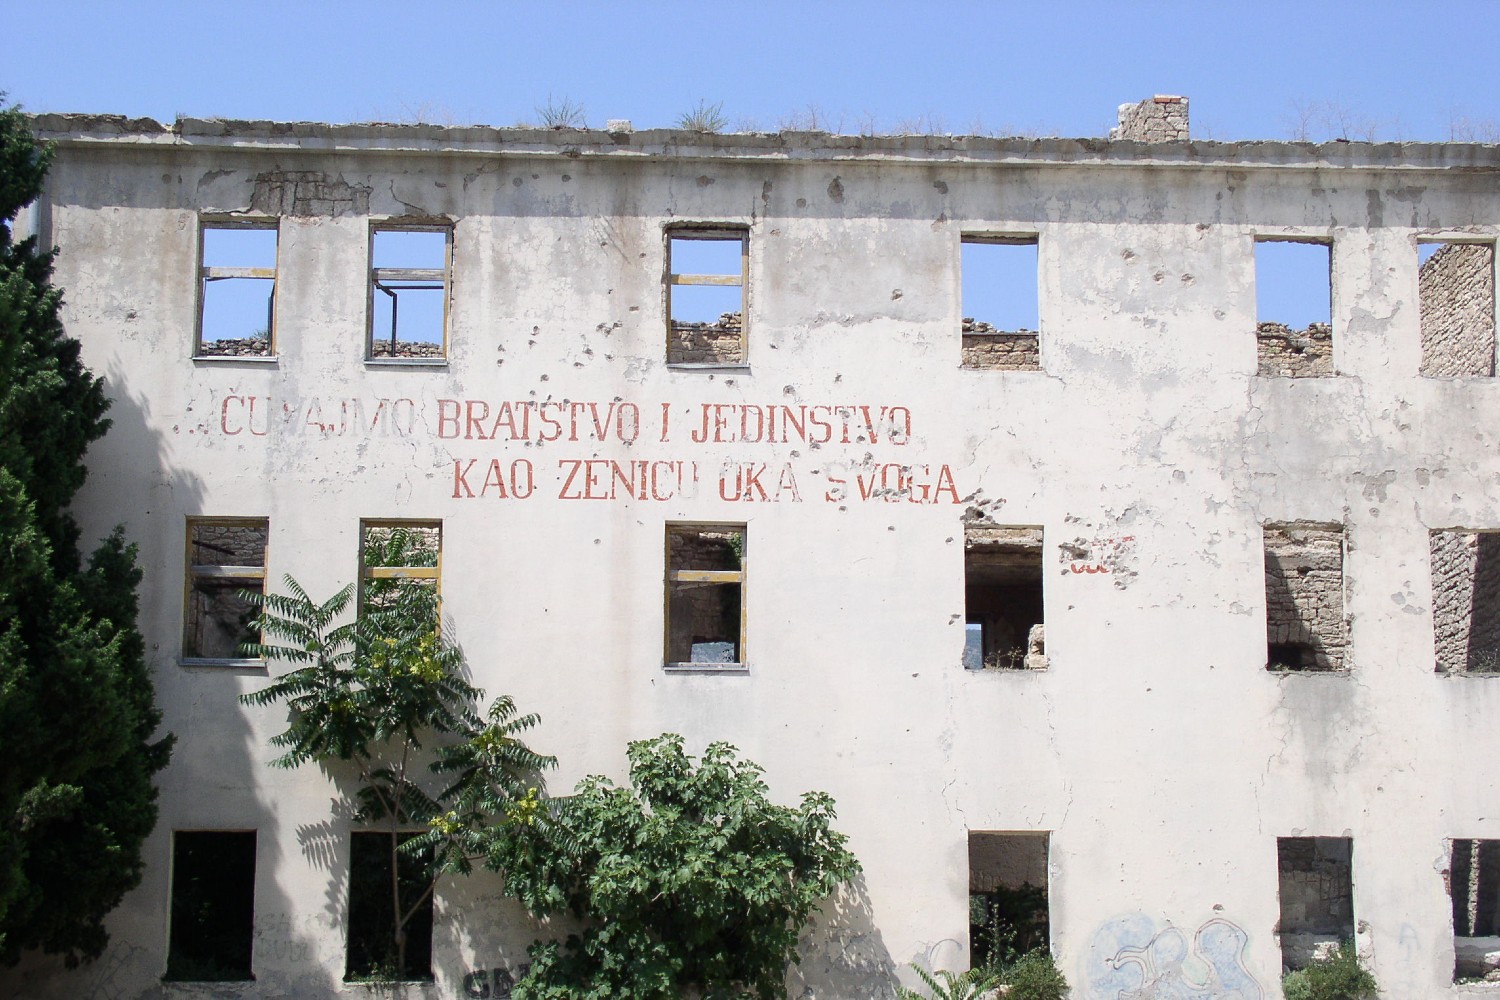 Zgrada bivše kasarne JNA u Mostaru sa natisom – „Čuvajmo bratstvo i jedinstvo, kao zjenicu oka svog“ (Foto: Wikimedia/Antidiskriminator, CC BY-SA 3.0)